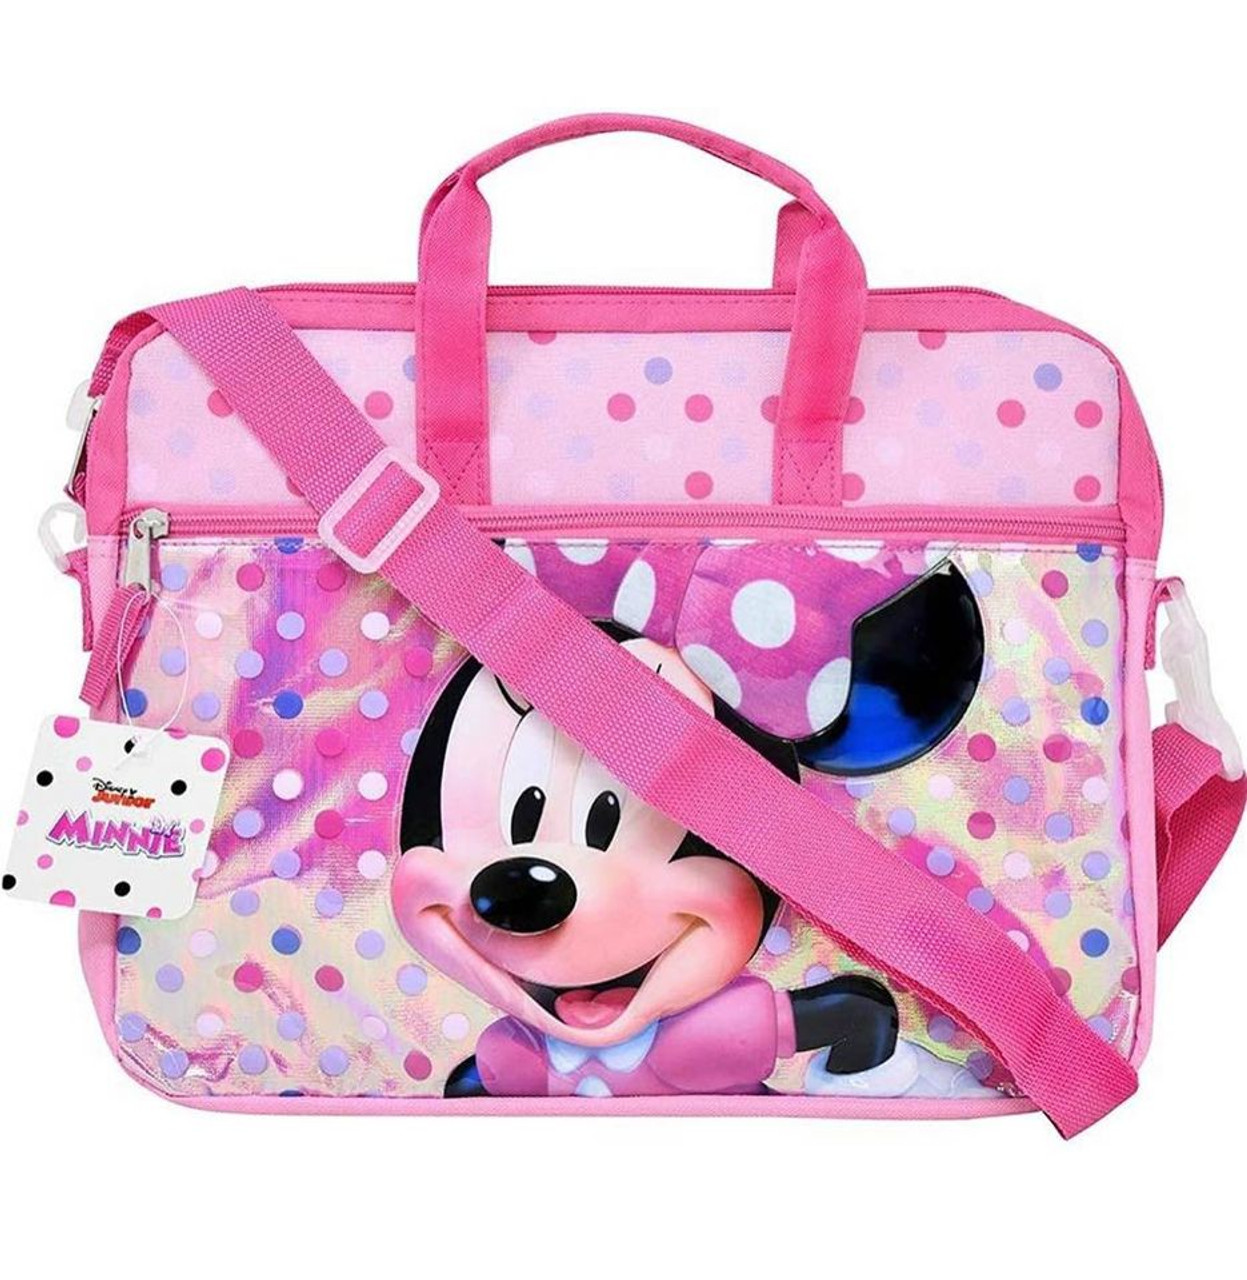 Hot Pink Michael Kors Tablet Bag/Case | Tablet bag, Michael kors shoulder  bag, Bags